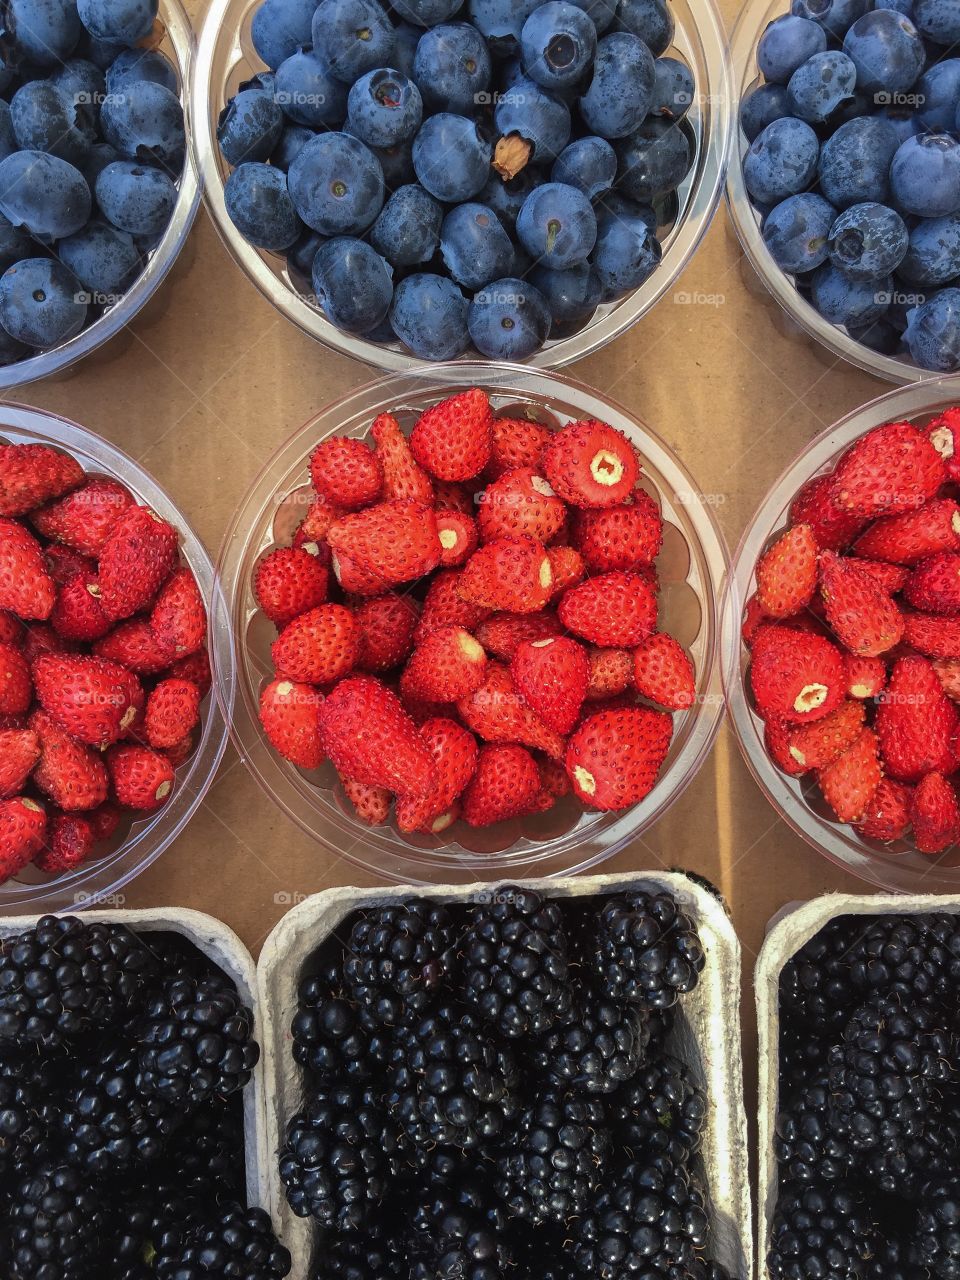 Variation of berries fruit